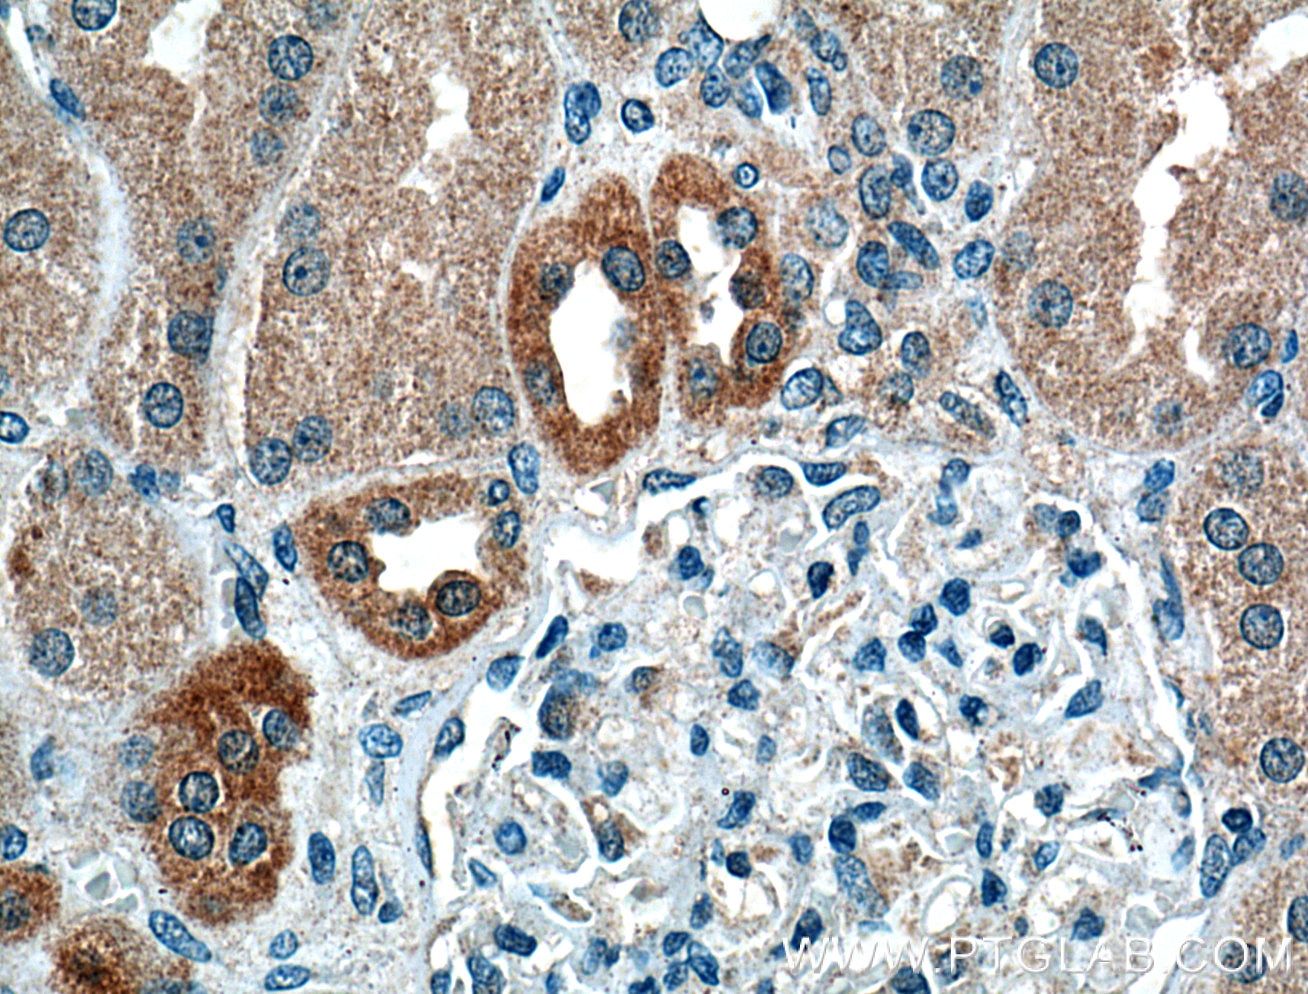 Immunohistochemistry (IHC) staining of human kidney tissue using Calbindin-D28k Monoclonal antibody (66394-1-Ig)